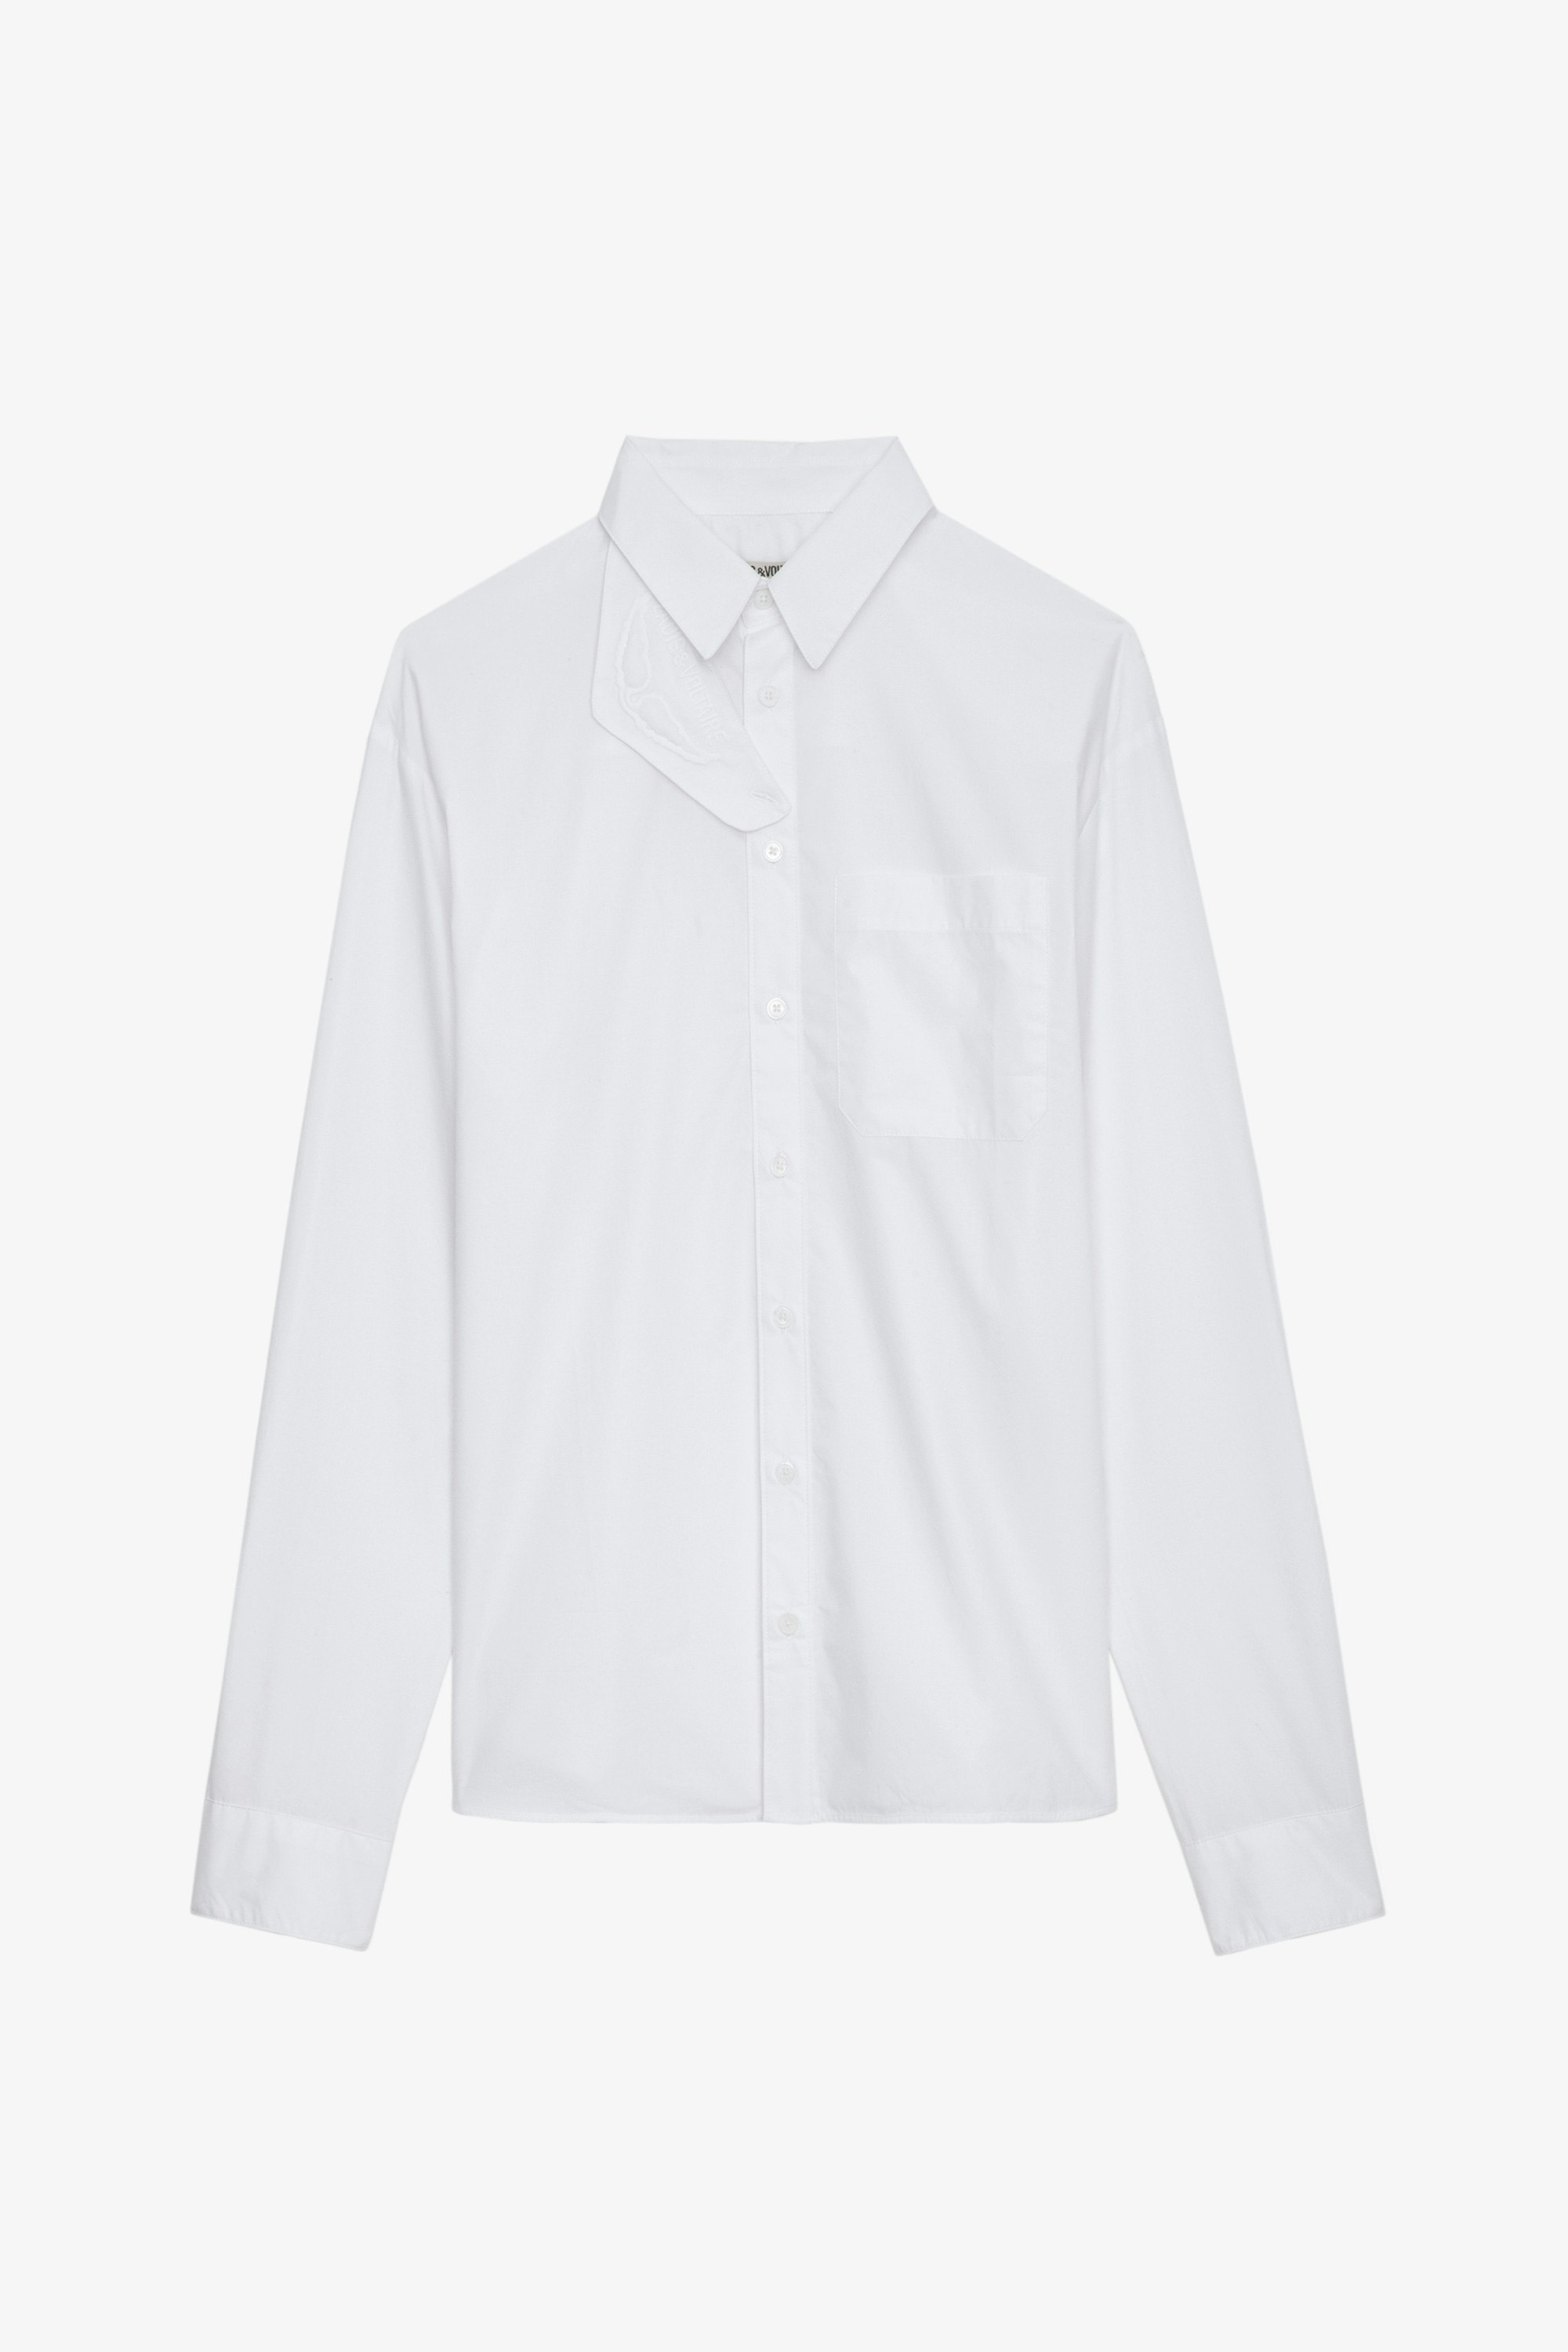 Chemise Tyrone - Chemise longue en coton blanc boutonnée, à poches et col à protection amovible.